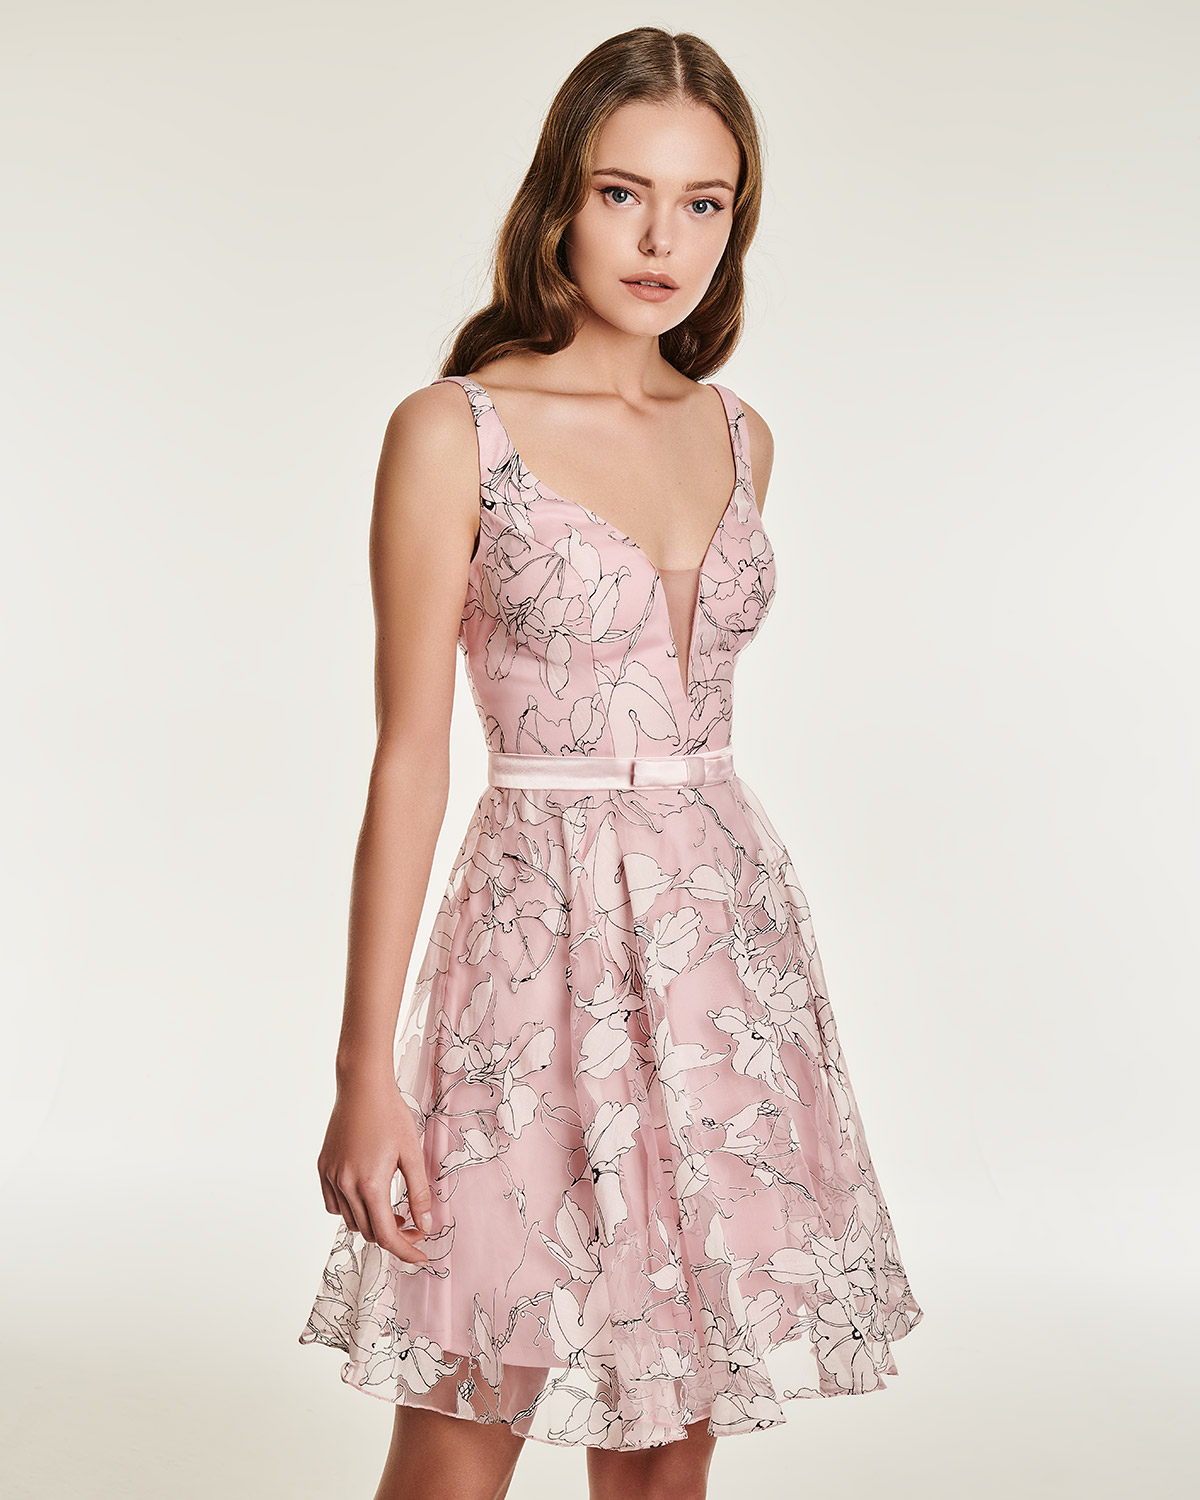 Κοκτέιλ Φορέματα / Κοκτέιλ φόρεμα με φλοράλ μοτίβο και λεπτή ζώνη